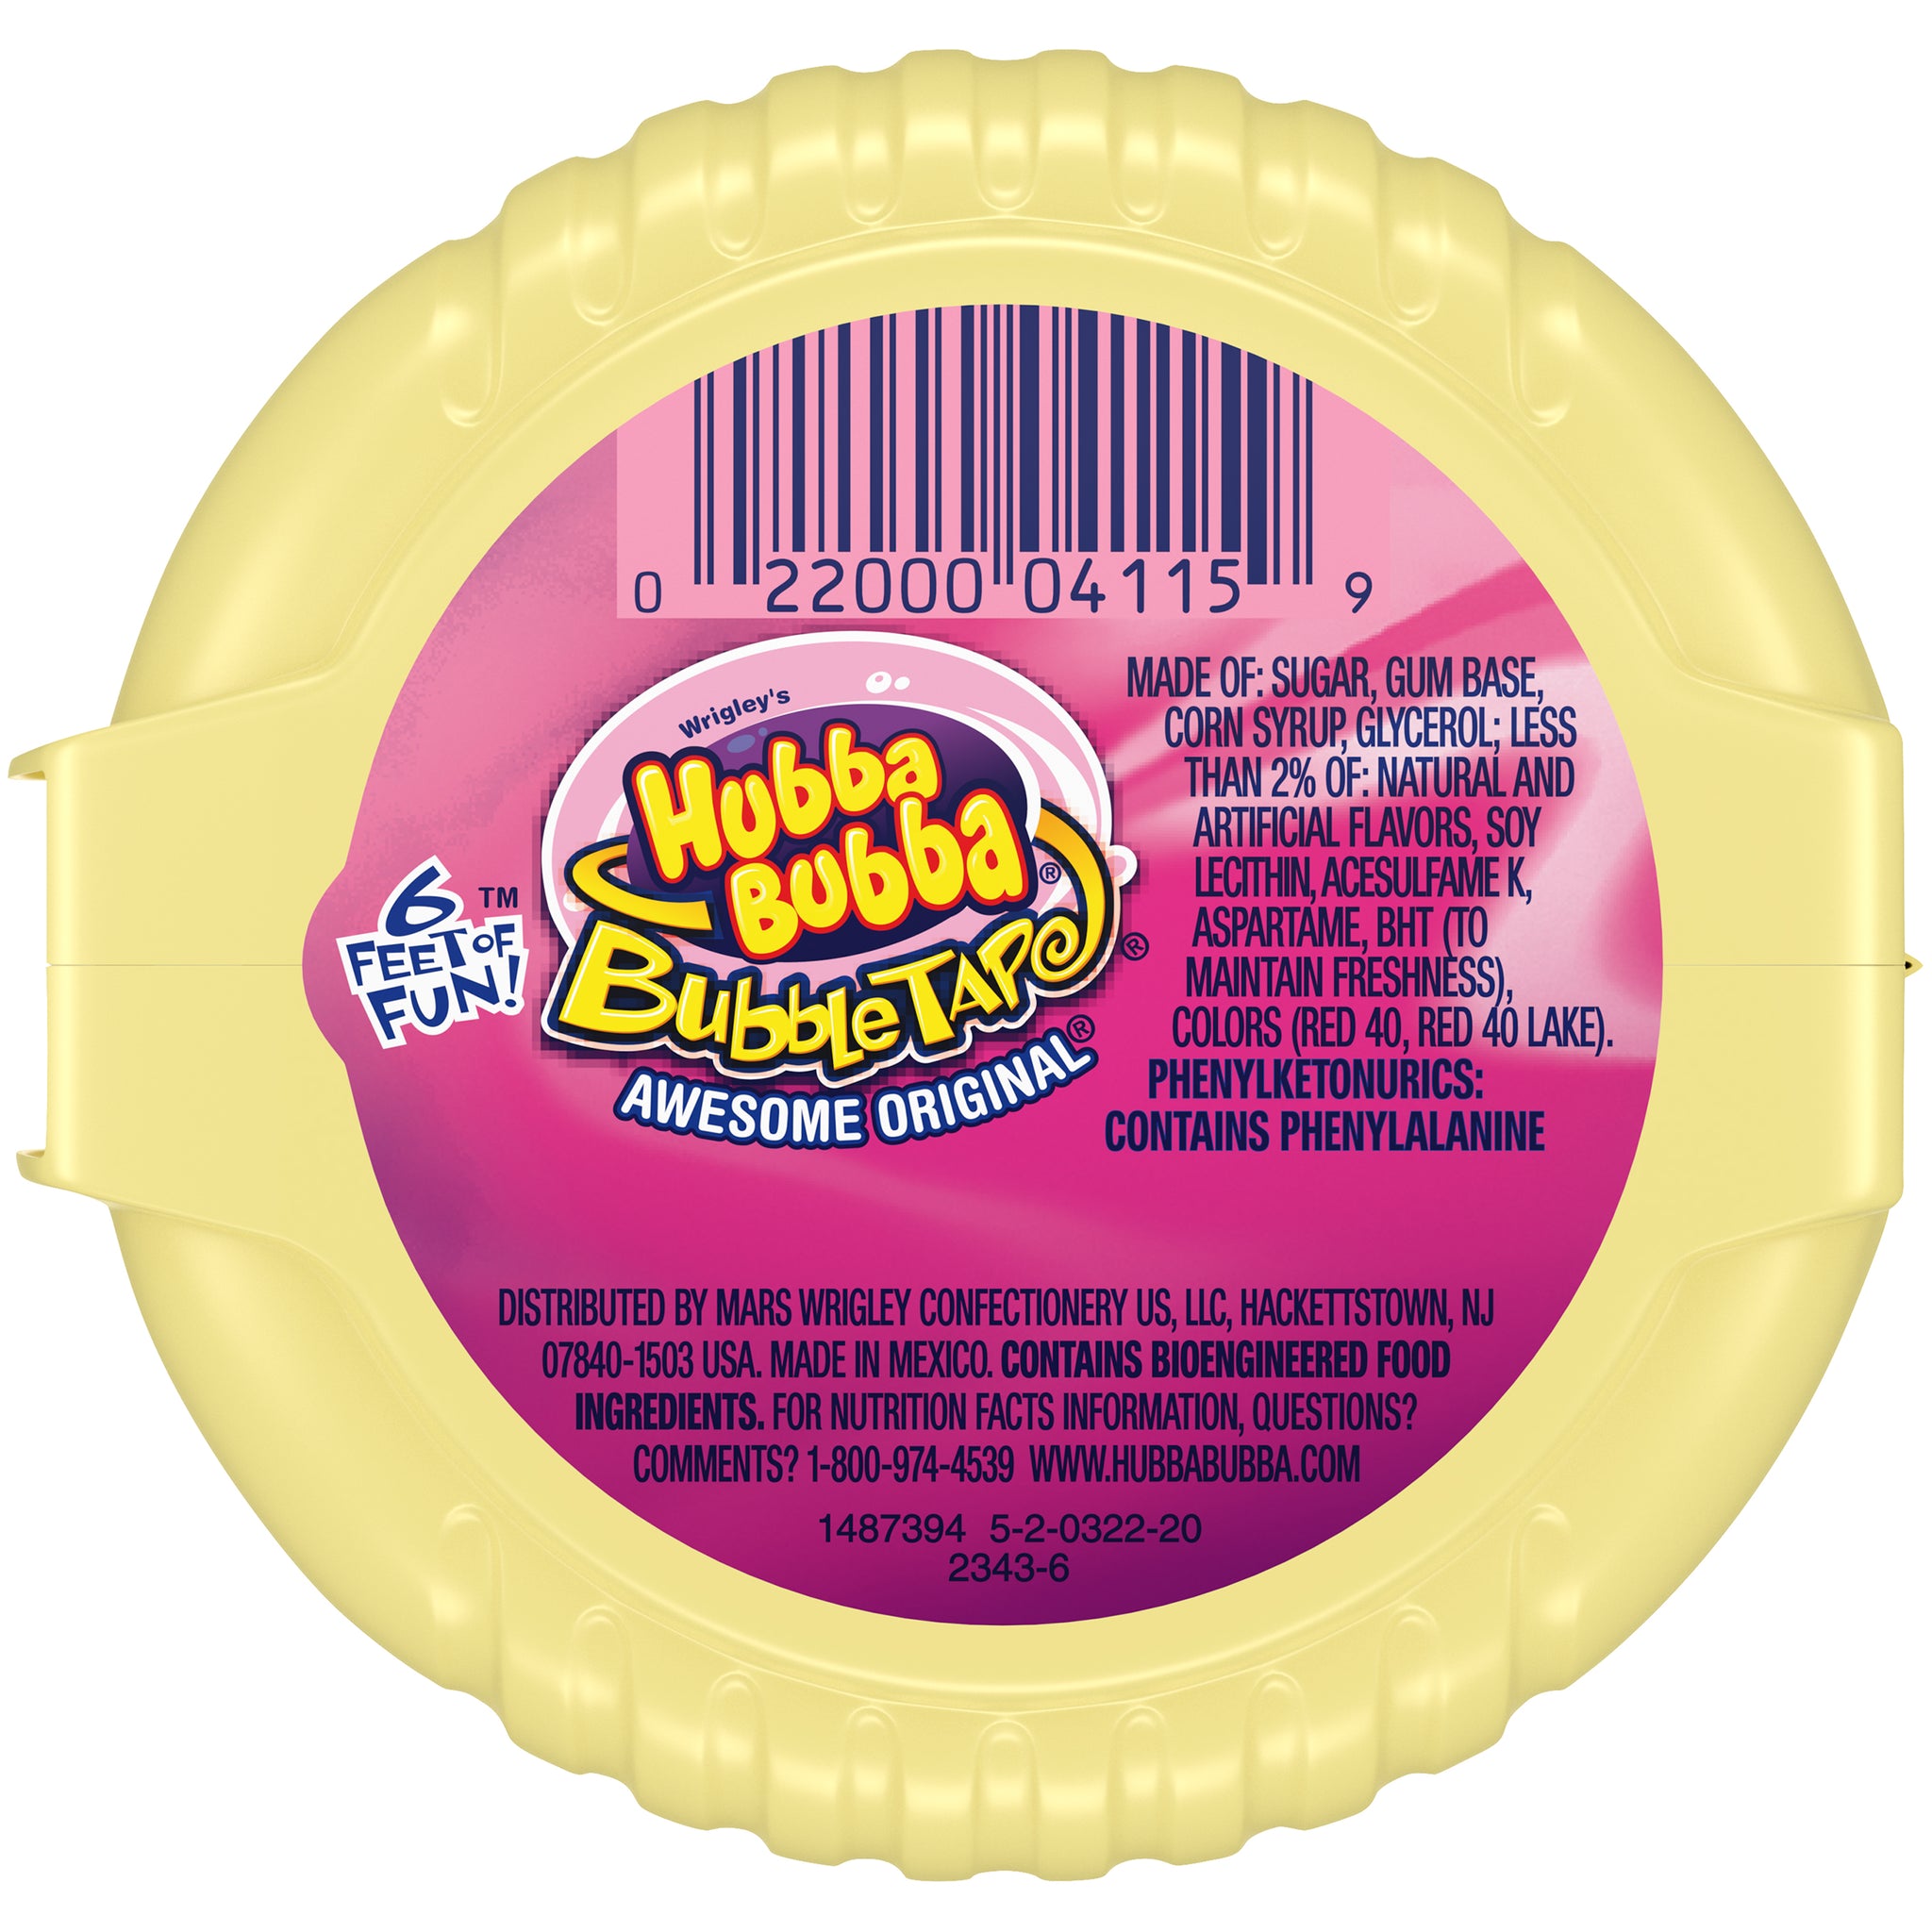 Hubba Bubba ~ Bubble Tape ~ Chewing Gum ~ 6 Feet Of Fun American